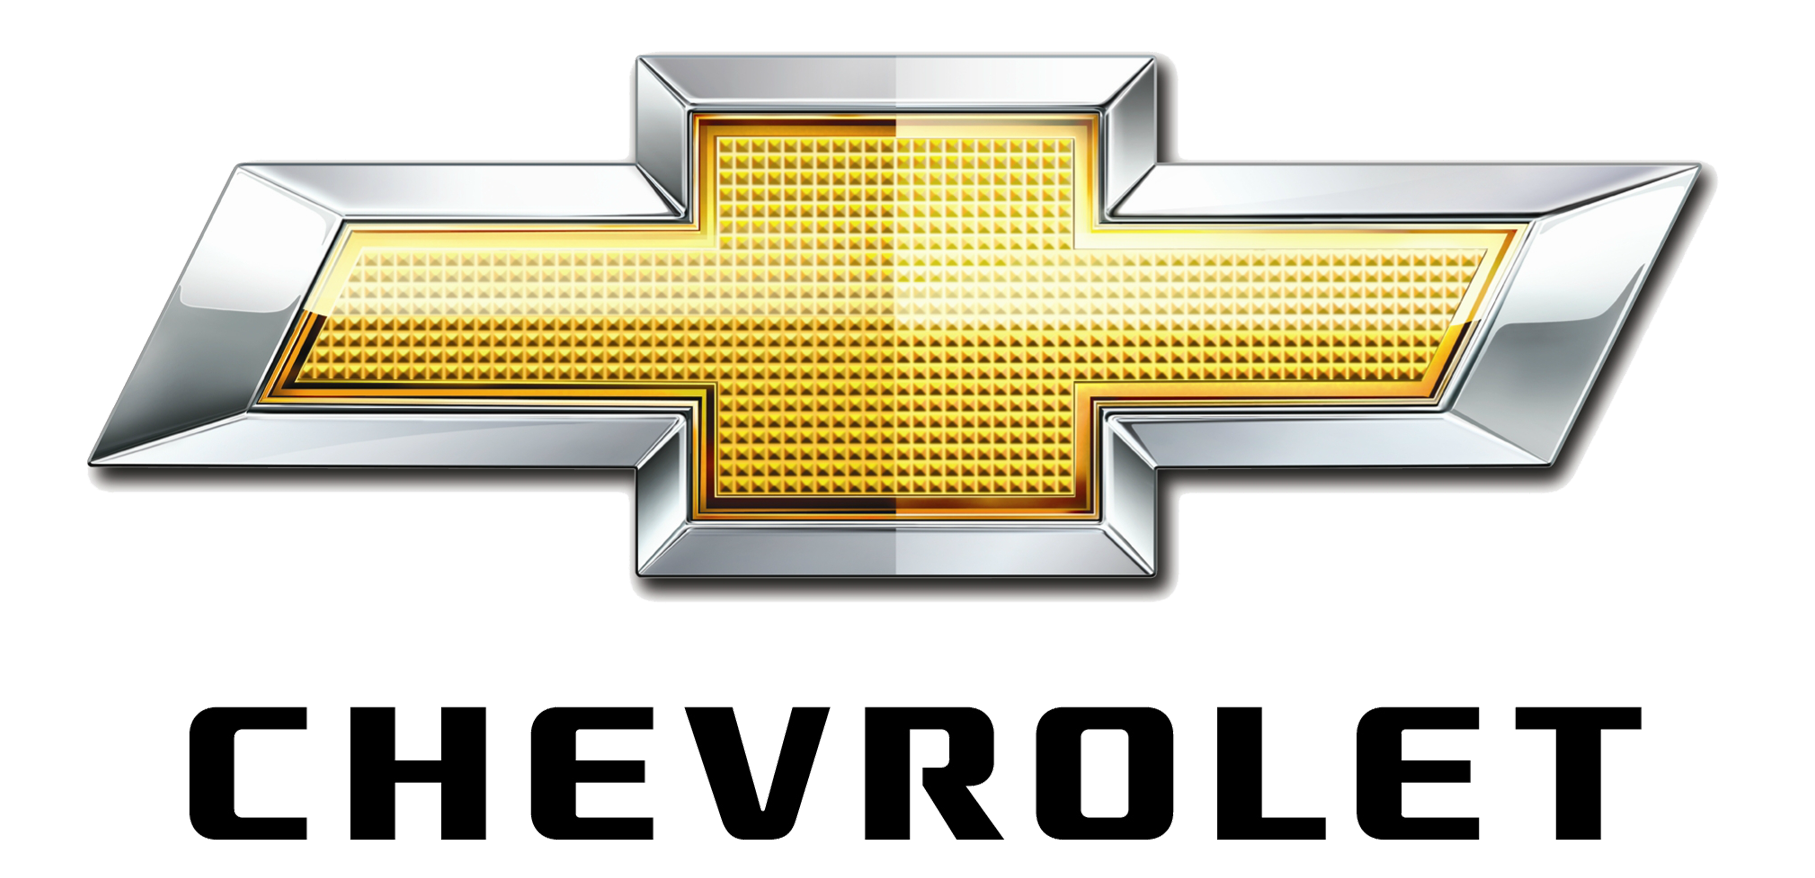 Chevrolet   Logo